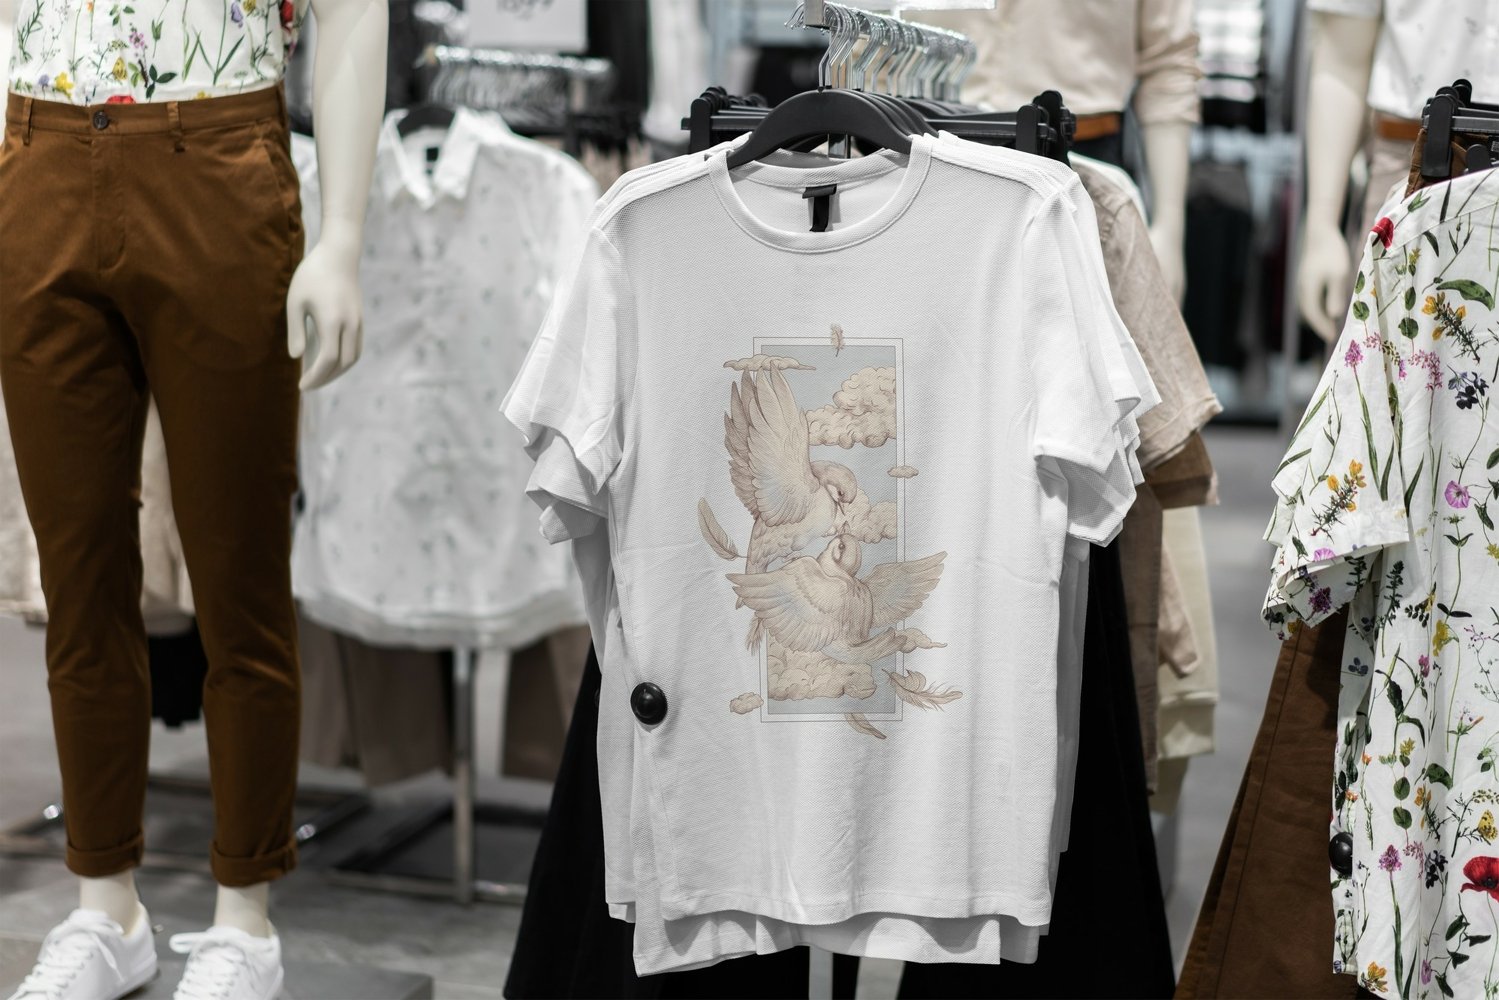 T-shirt sparrows design.